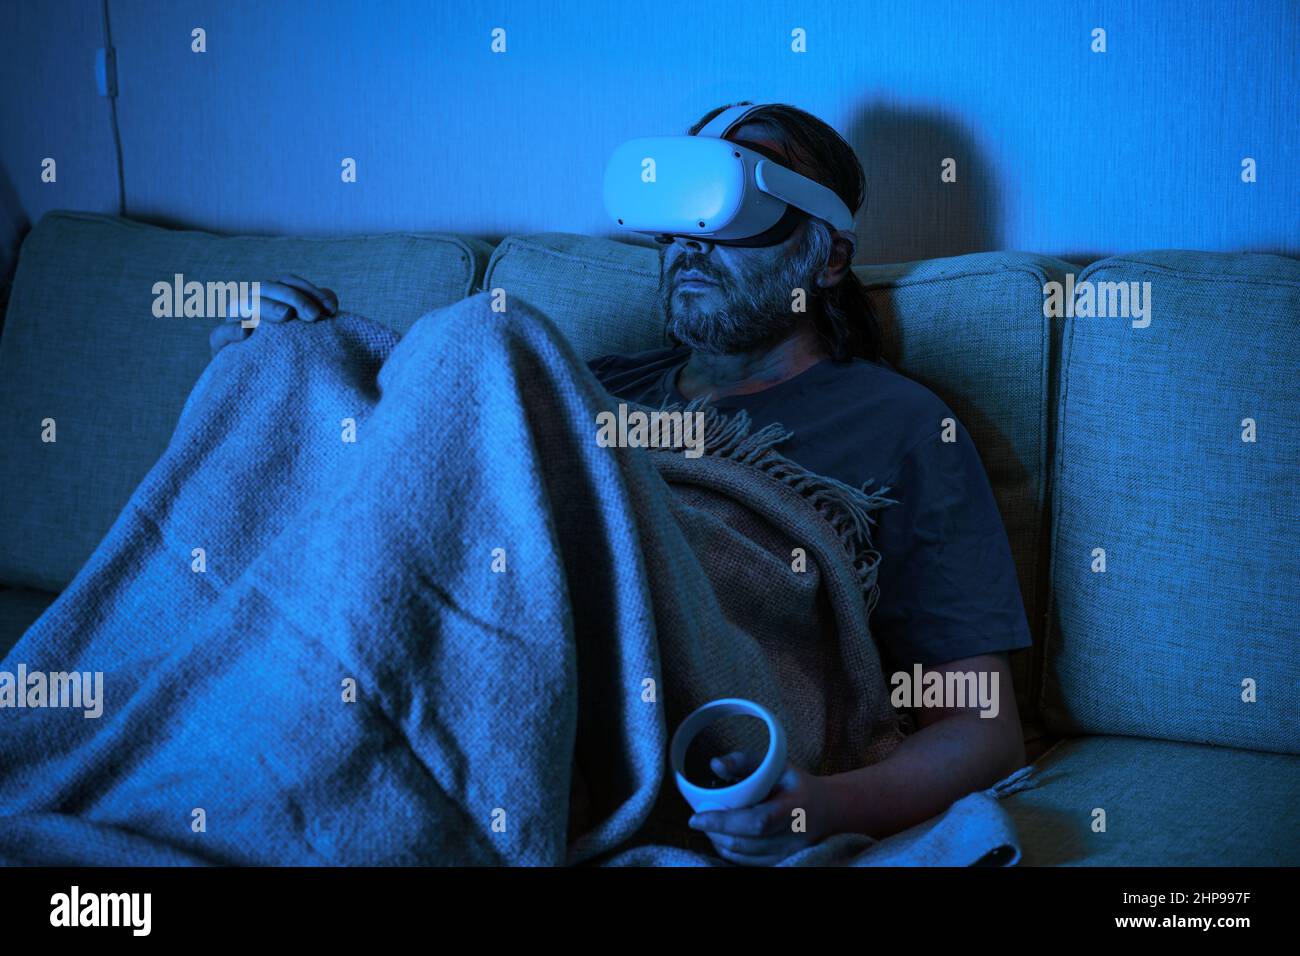 Un homme assis sur un canapé utilise un casque de réalité virtuelle la nuit, une personne triste regardant dans des lunettes VR à la maison seule. Concept de solitude, regarder la télévision, se détendre Banque D'Images